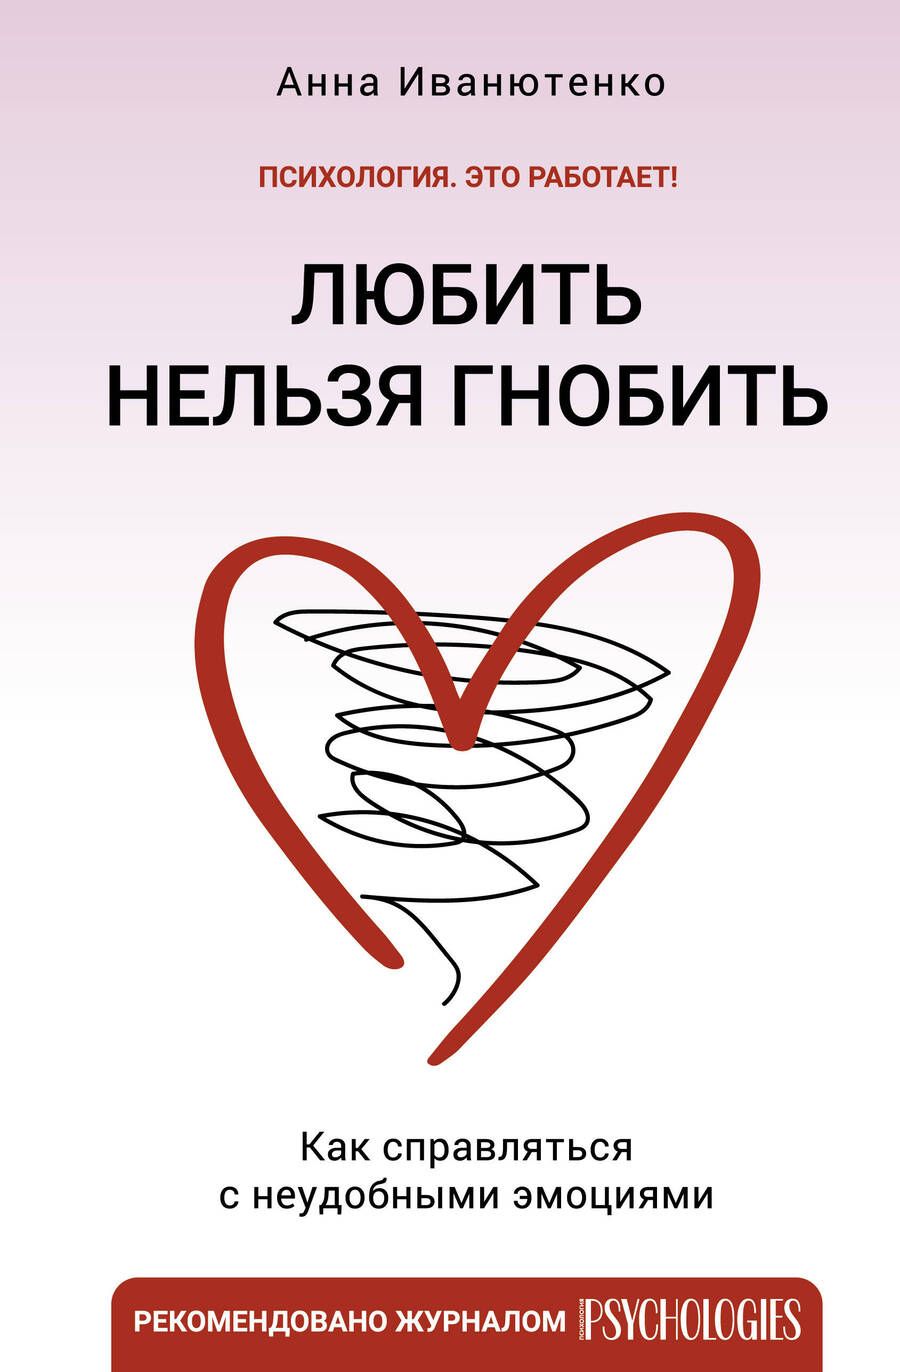 Обложка книги "Иванютенко: Любить нельзя гнобить. Как справляться с неудобными эмоциями"